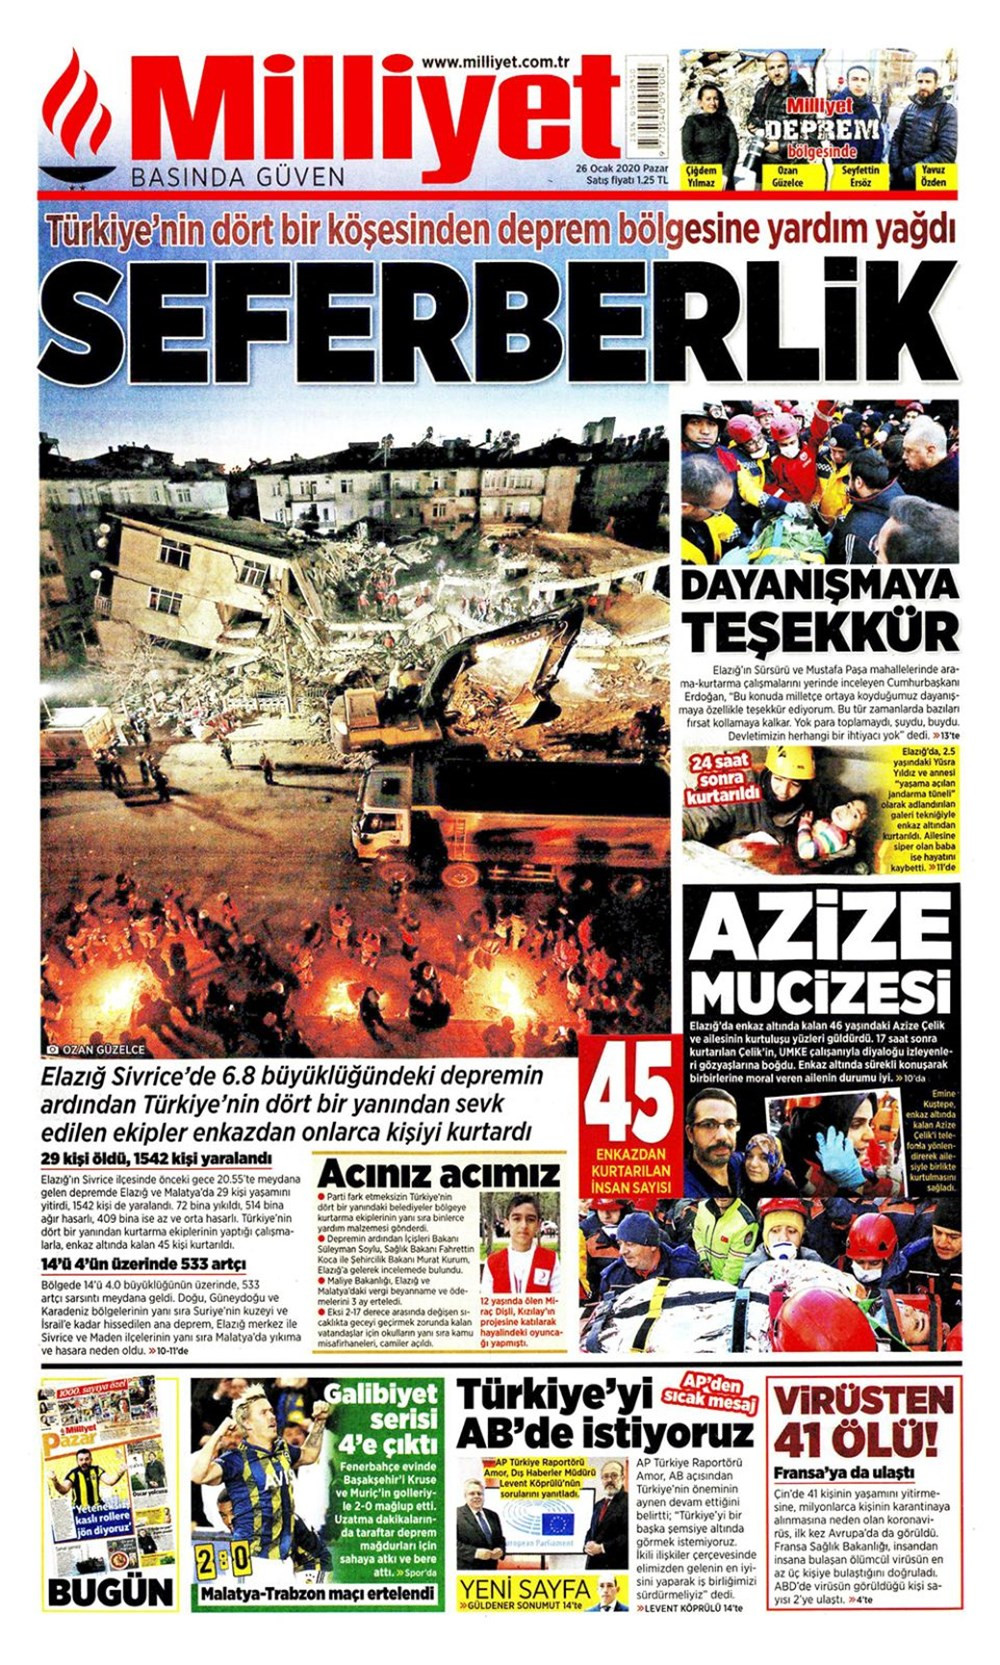 Elazığ depremi gazete manşetlerinde! 26 Ocak 2020 gazete manşetleri - Resim: 4